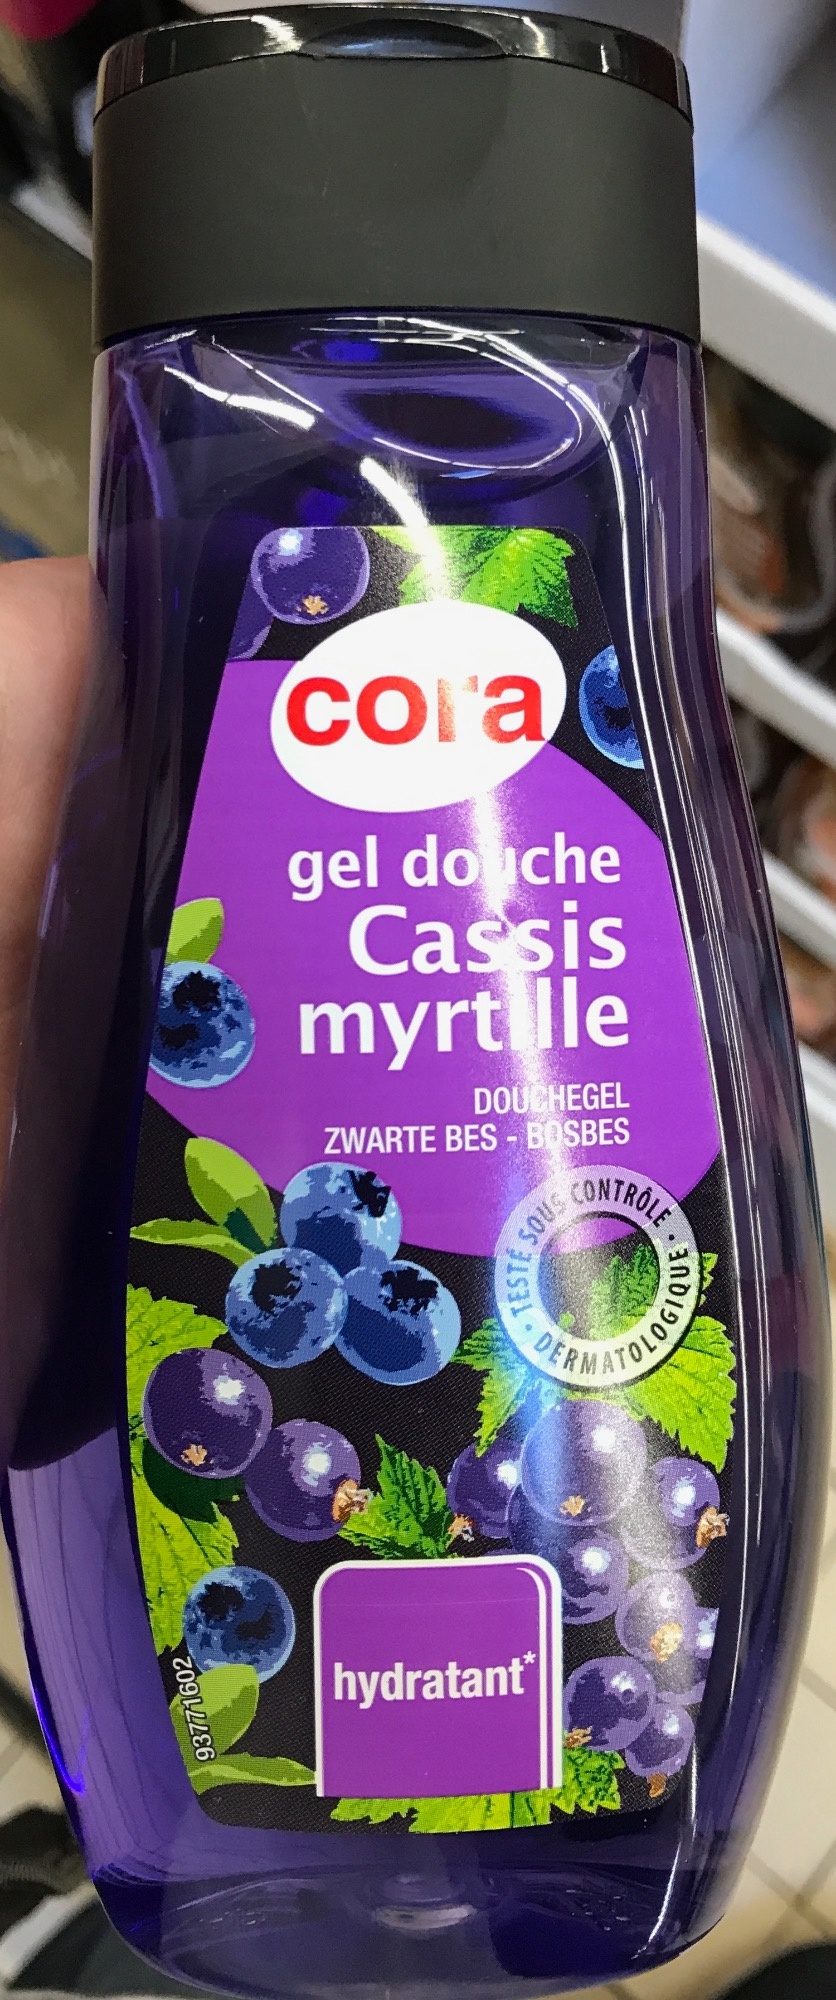 Gel douche Cassis myrtille - Produit - fr